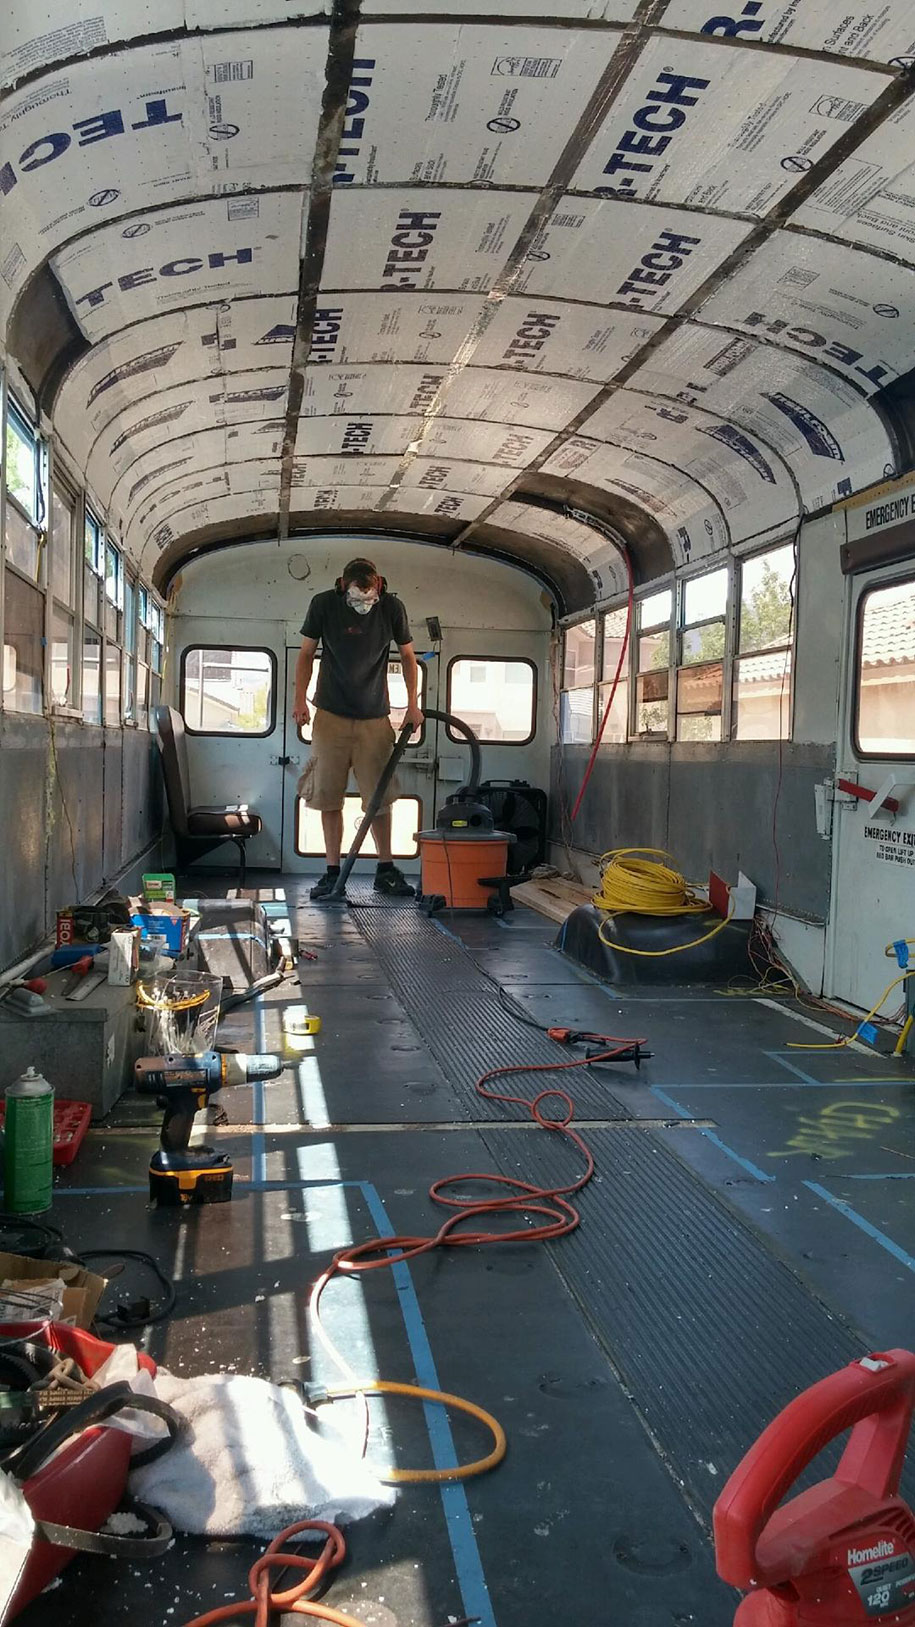 viejo autobús escolar convertido en casa - aislante para el frío